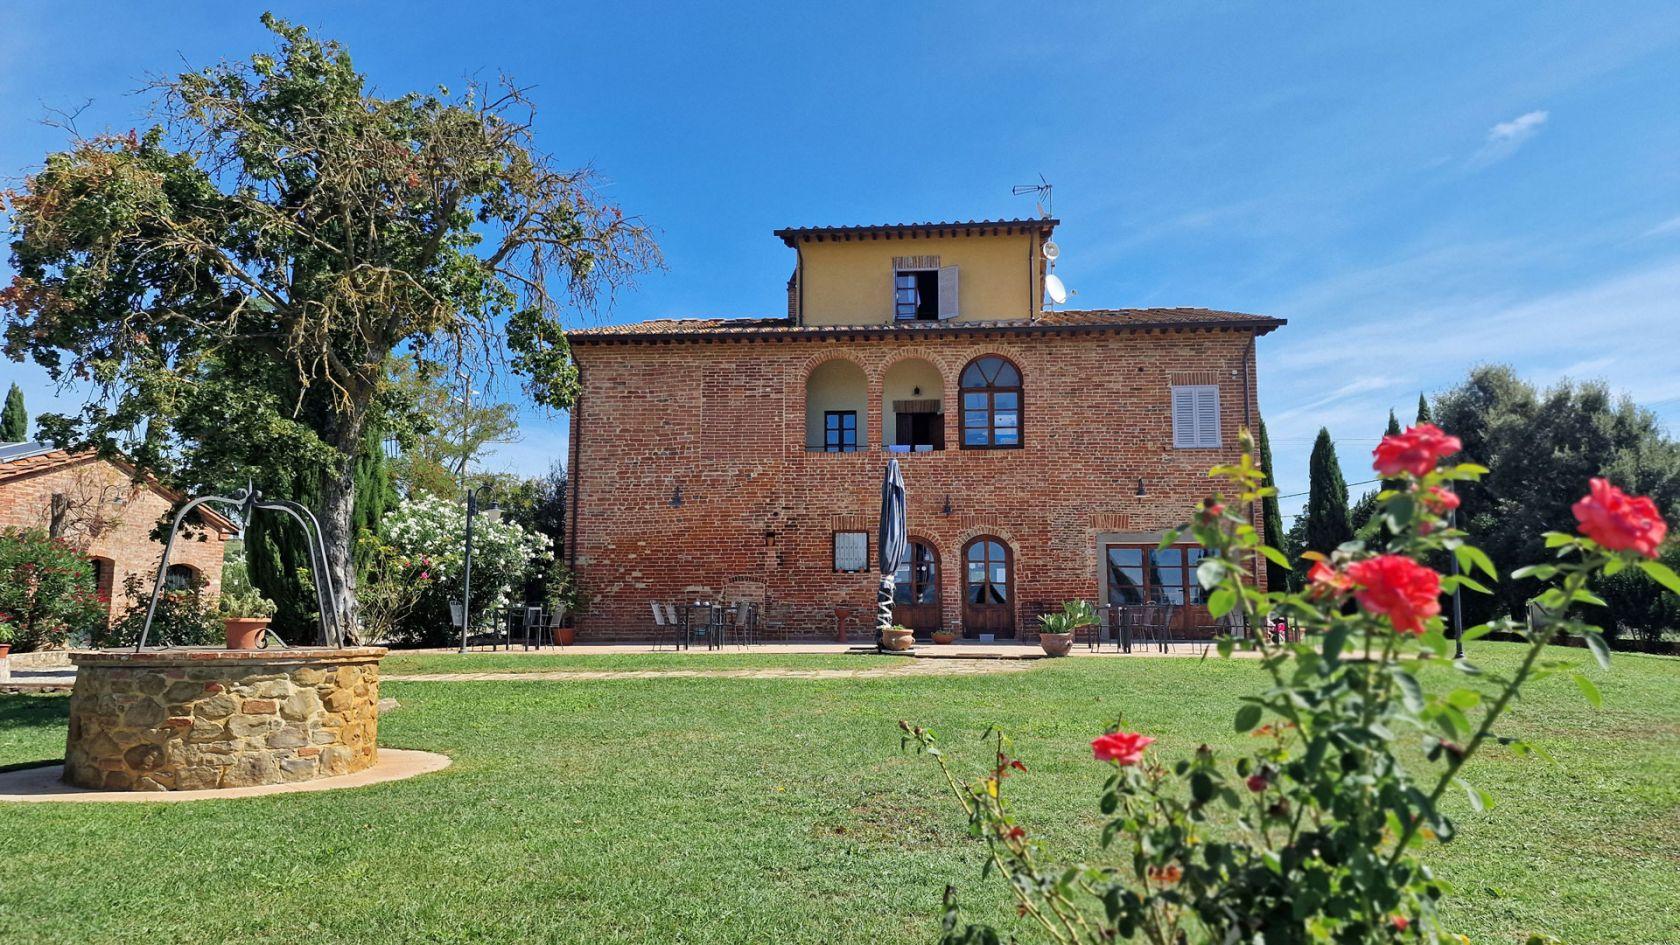 Toscana Immobiliare - Cortona Holiday house, Farmhouse in ancient home for sale in Cortona.